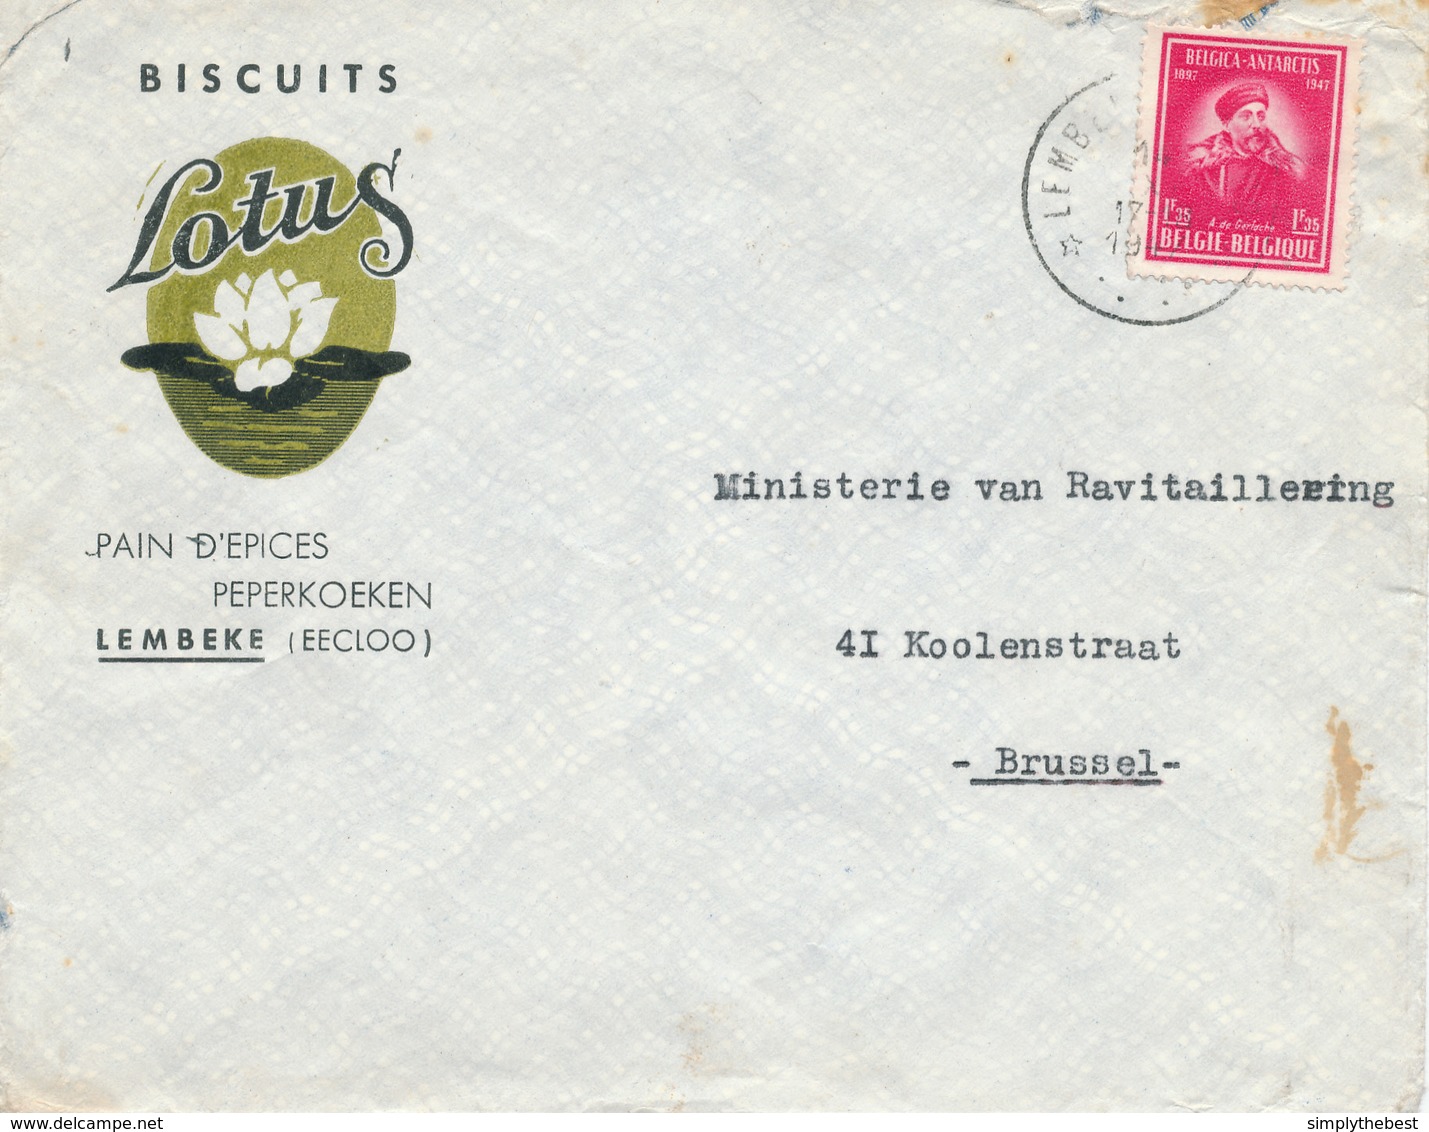 399/29 - Enveloppe TP 749 De Gerlache Cachet RELAIS à Etoiles LEMBEKE (Eecloo) 1947- Entete Biscuits Pains Epices Lotus - Postmarks With Stars